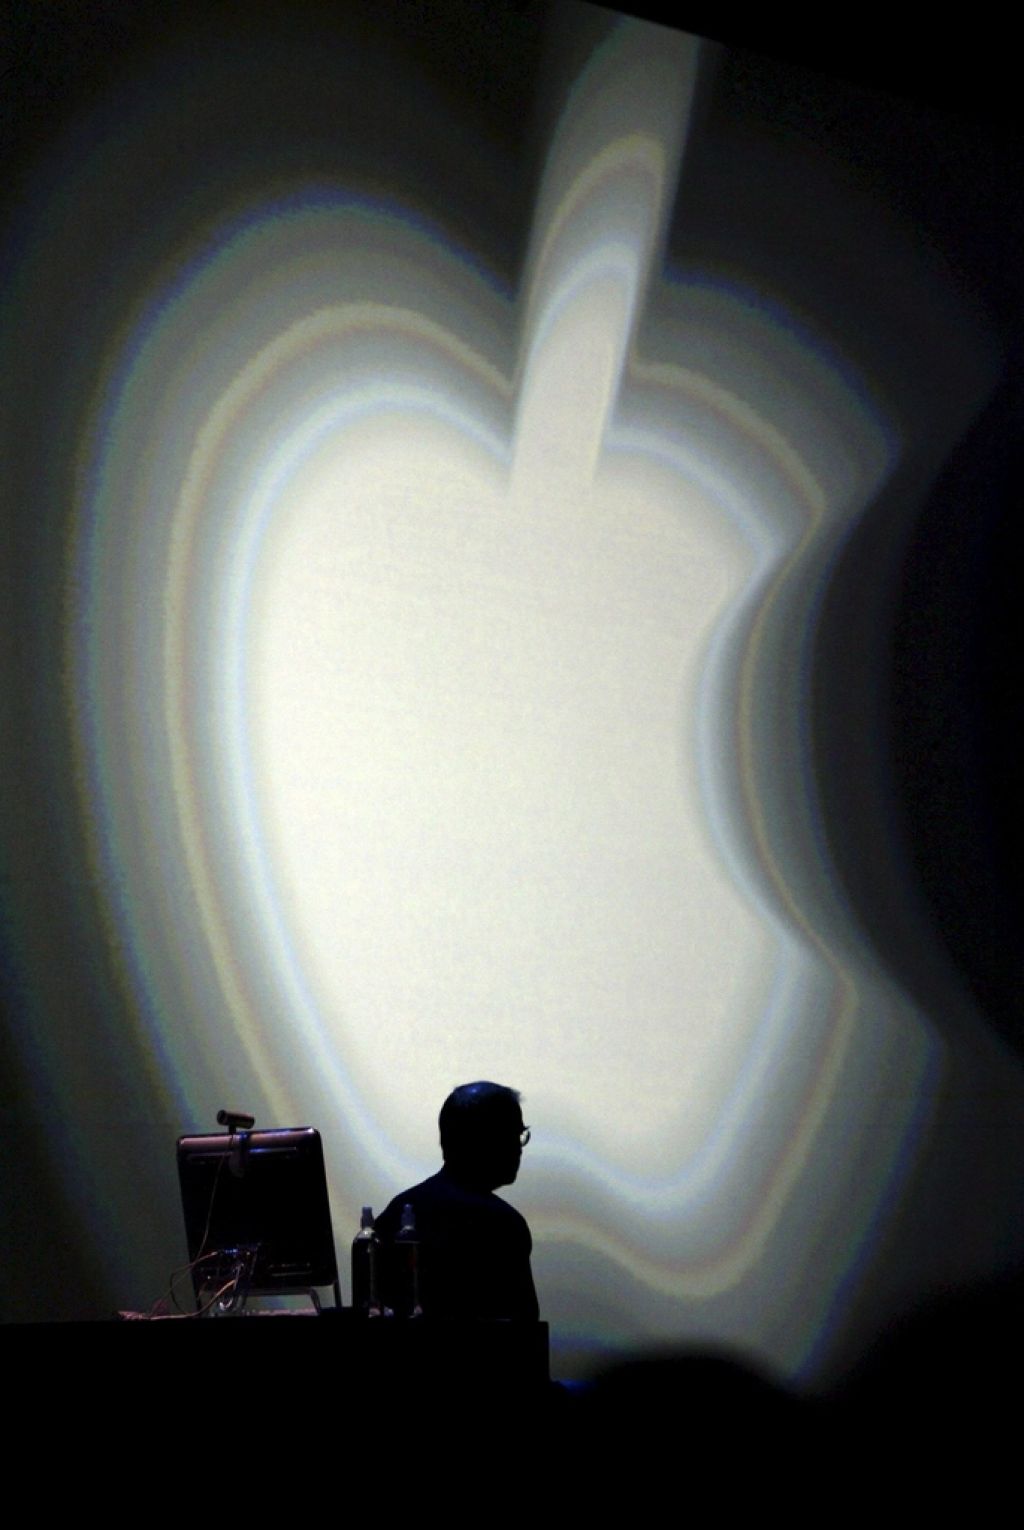 Apple z novo prodajno strategijo buri duhove